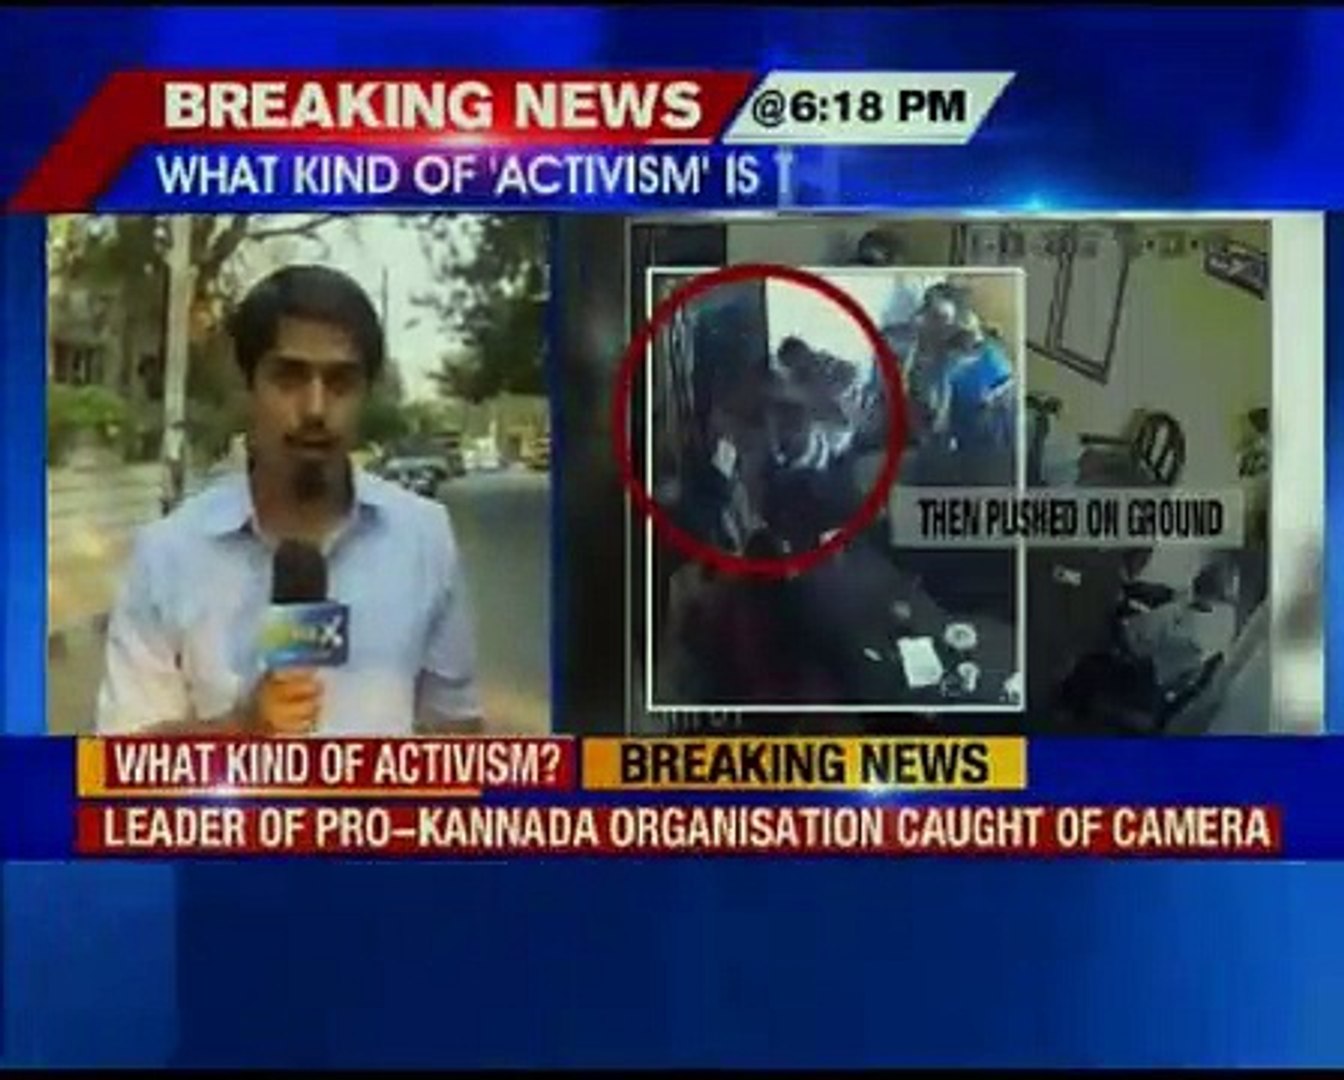 Pro-Kannada activist assaults woman